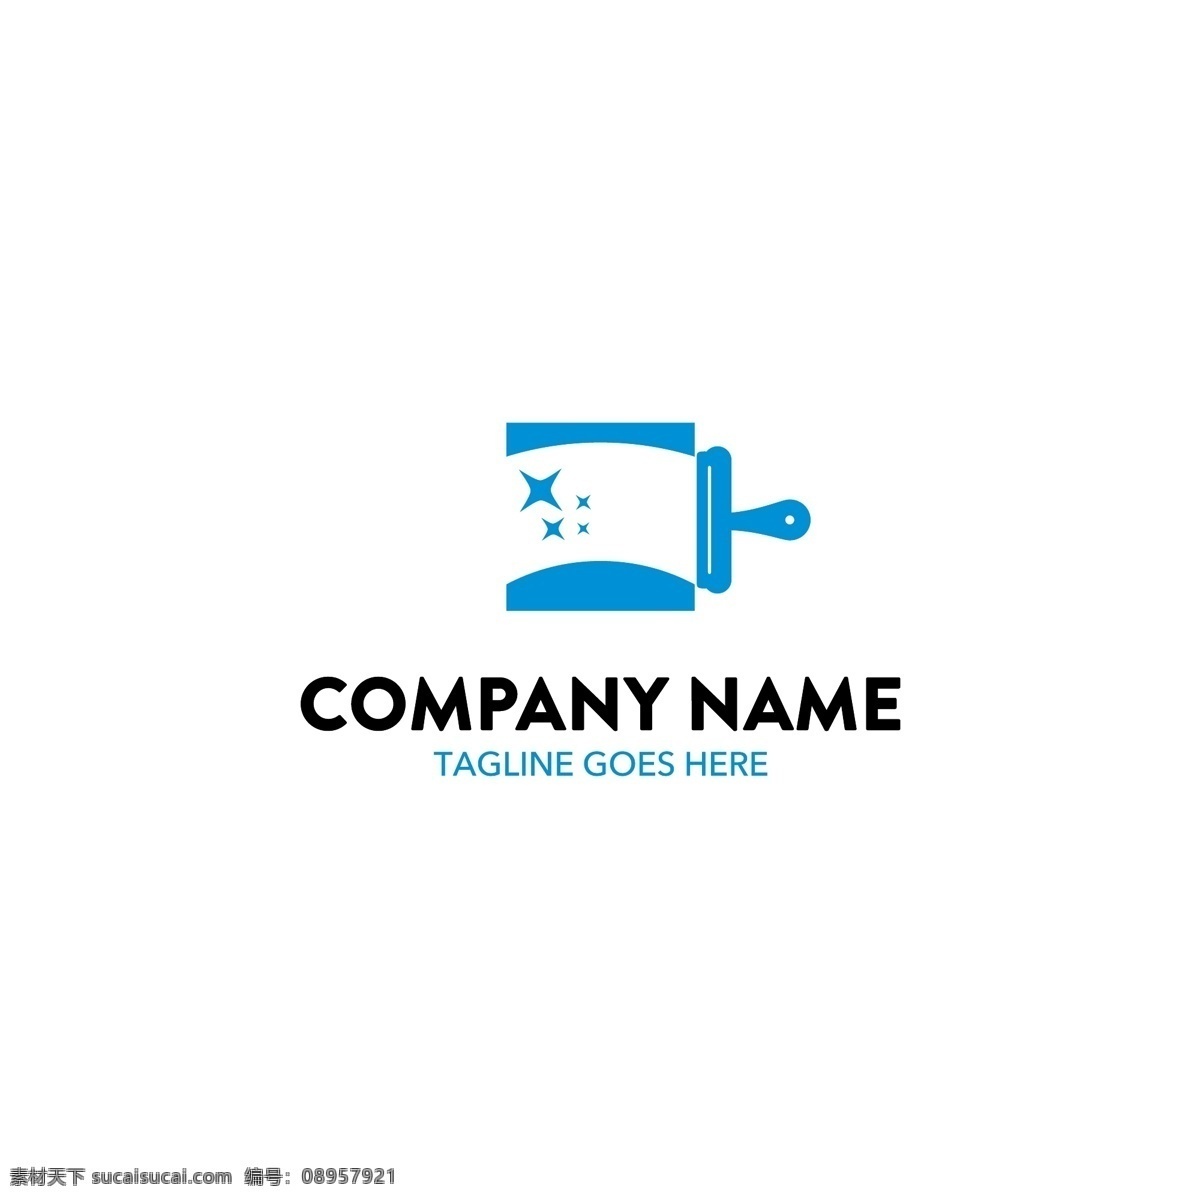 企业 主题 logo 矢量 个性炫彩标志 标志图形 logo设计 创意logo 图形标志设计 商标设计 企业logo 公司logo 标志图标 矢量素材